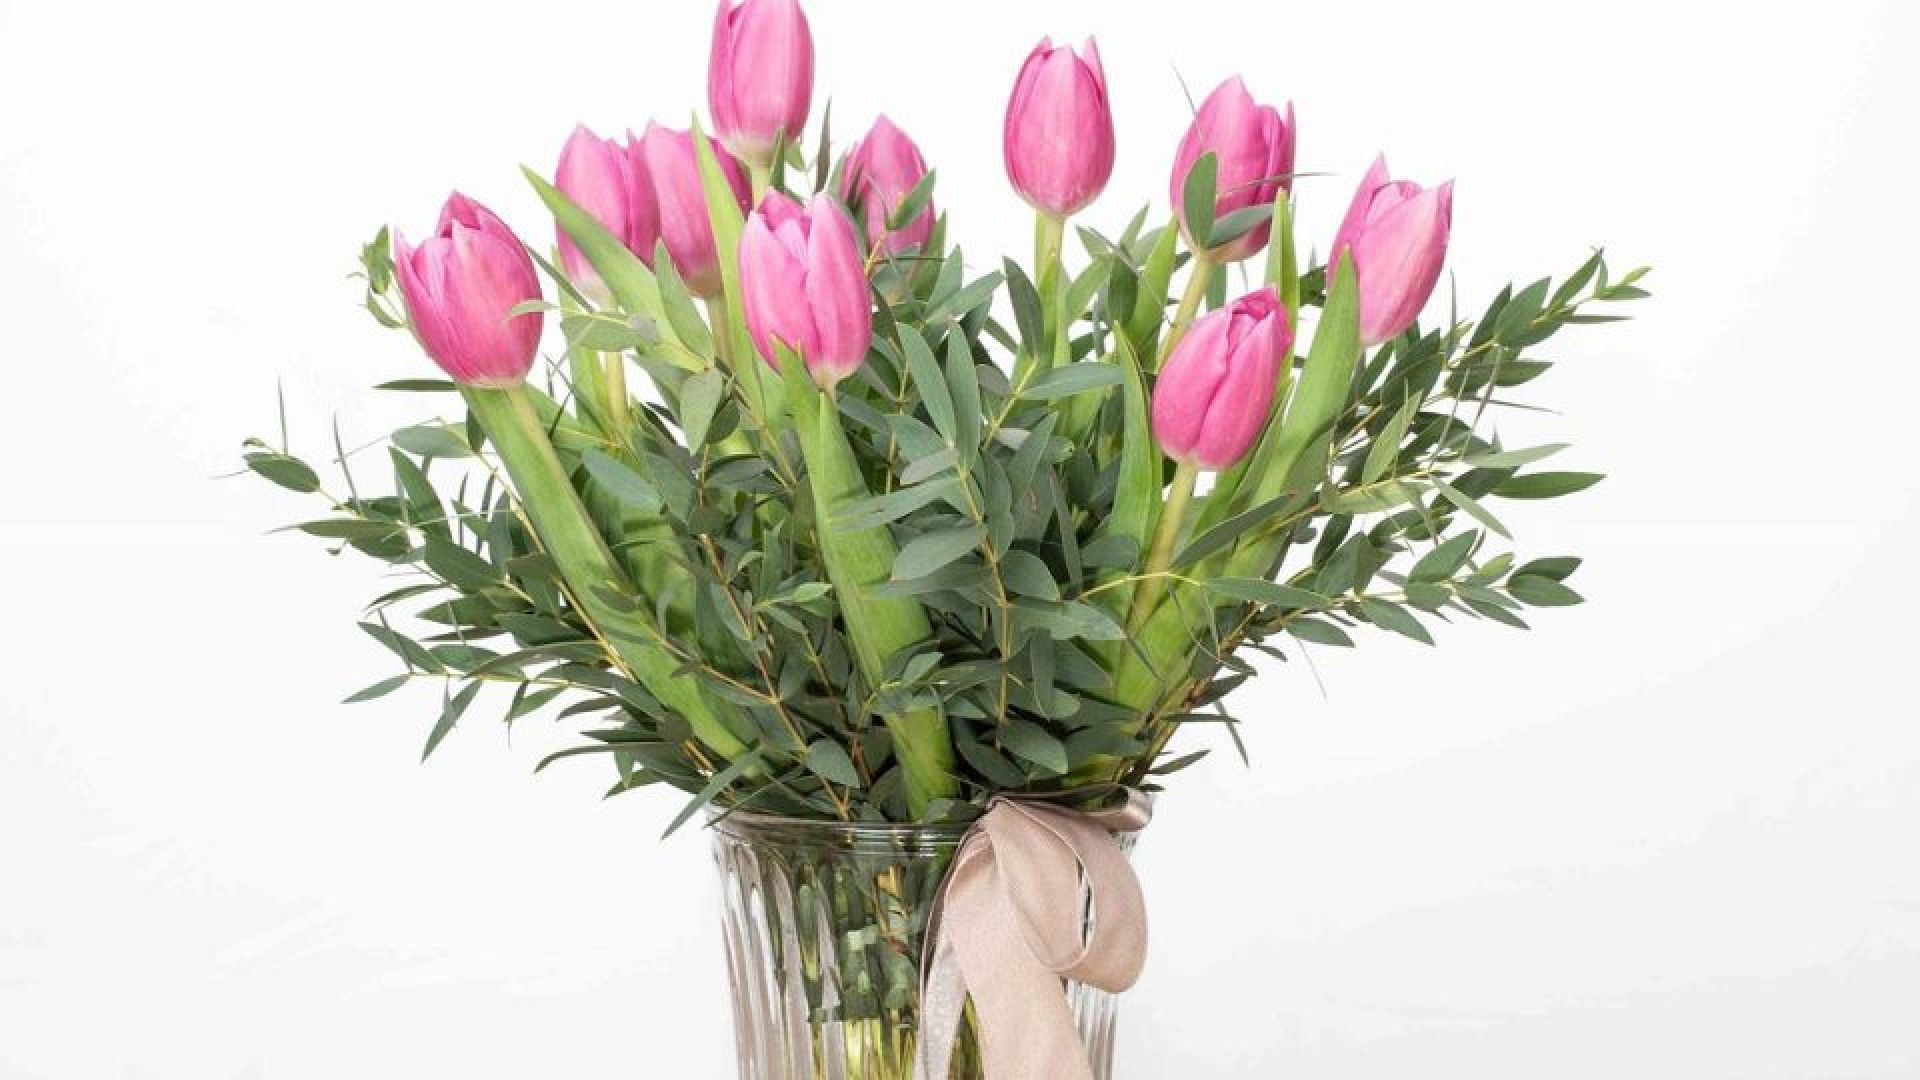 Envío flores a domicilio Madrid para aniversarios - ▷Floristería Madrid-Flores a domicilio Madrid▷Floristería Amborella